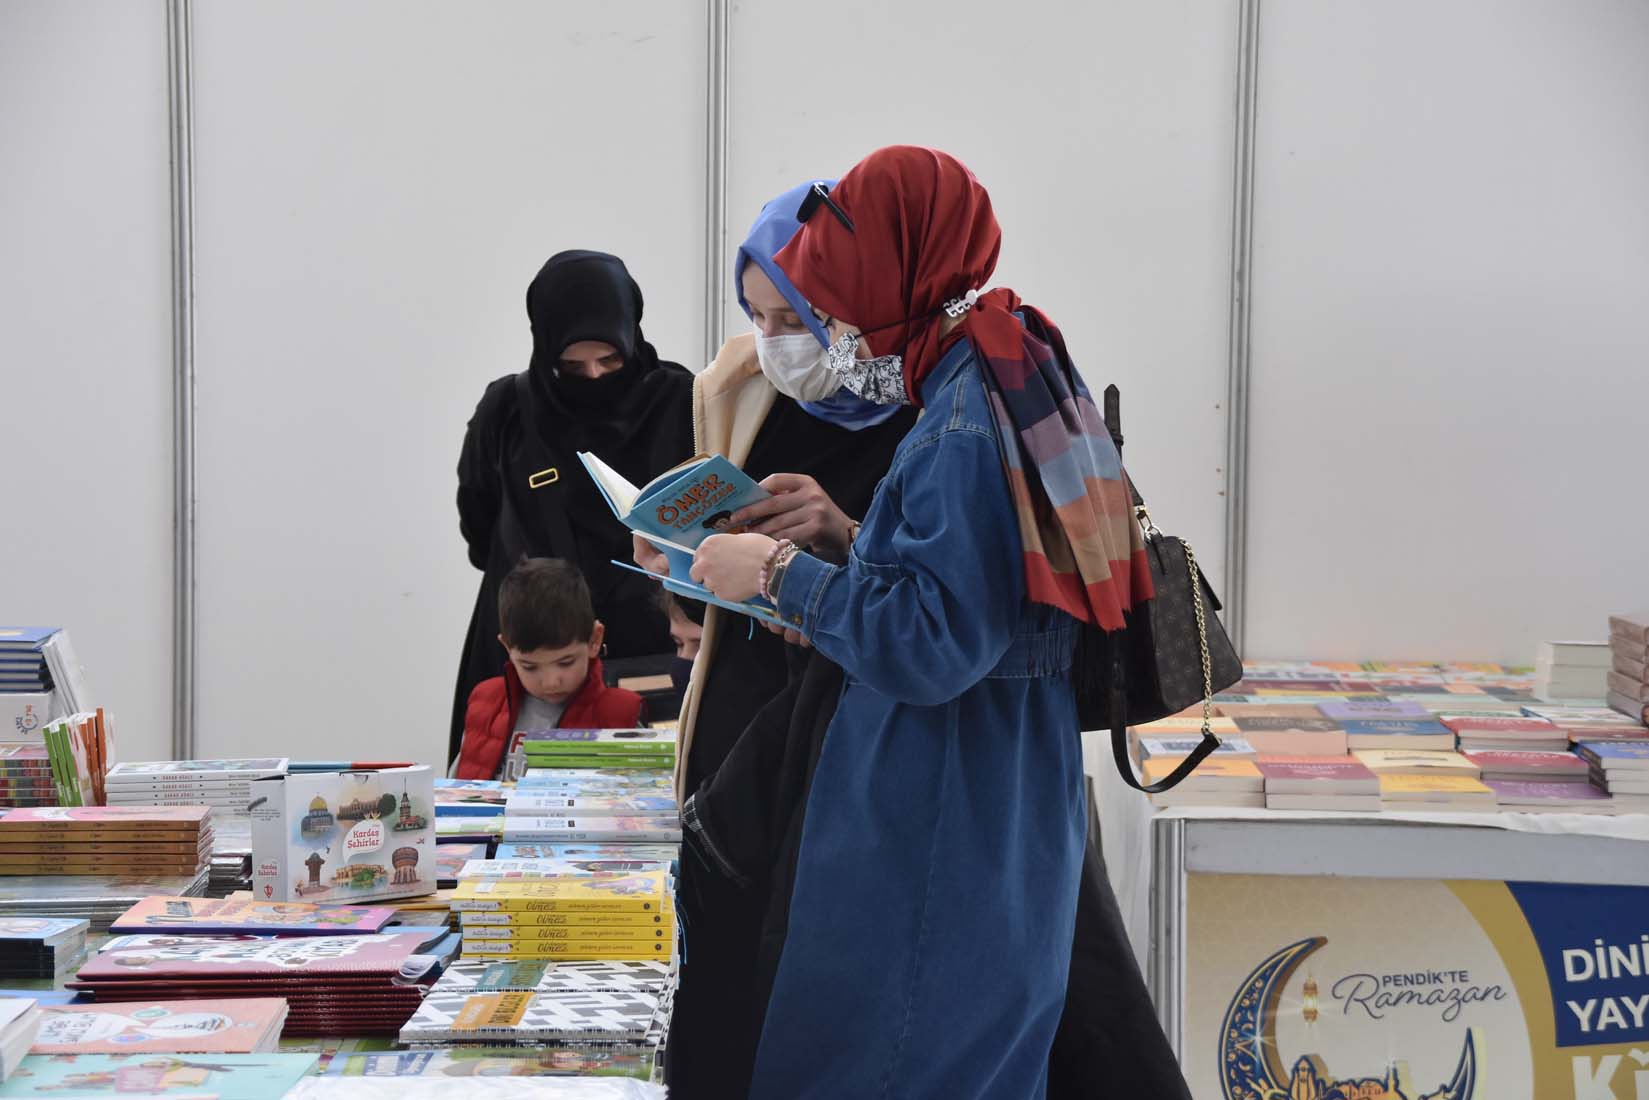 "Dini Yayınlar Kitap Fuarı" Açıldı! 24 yayın evi kitapseverler ile buluşuyor